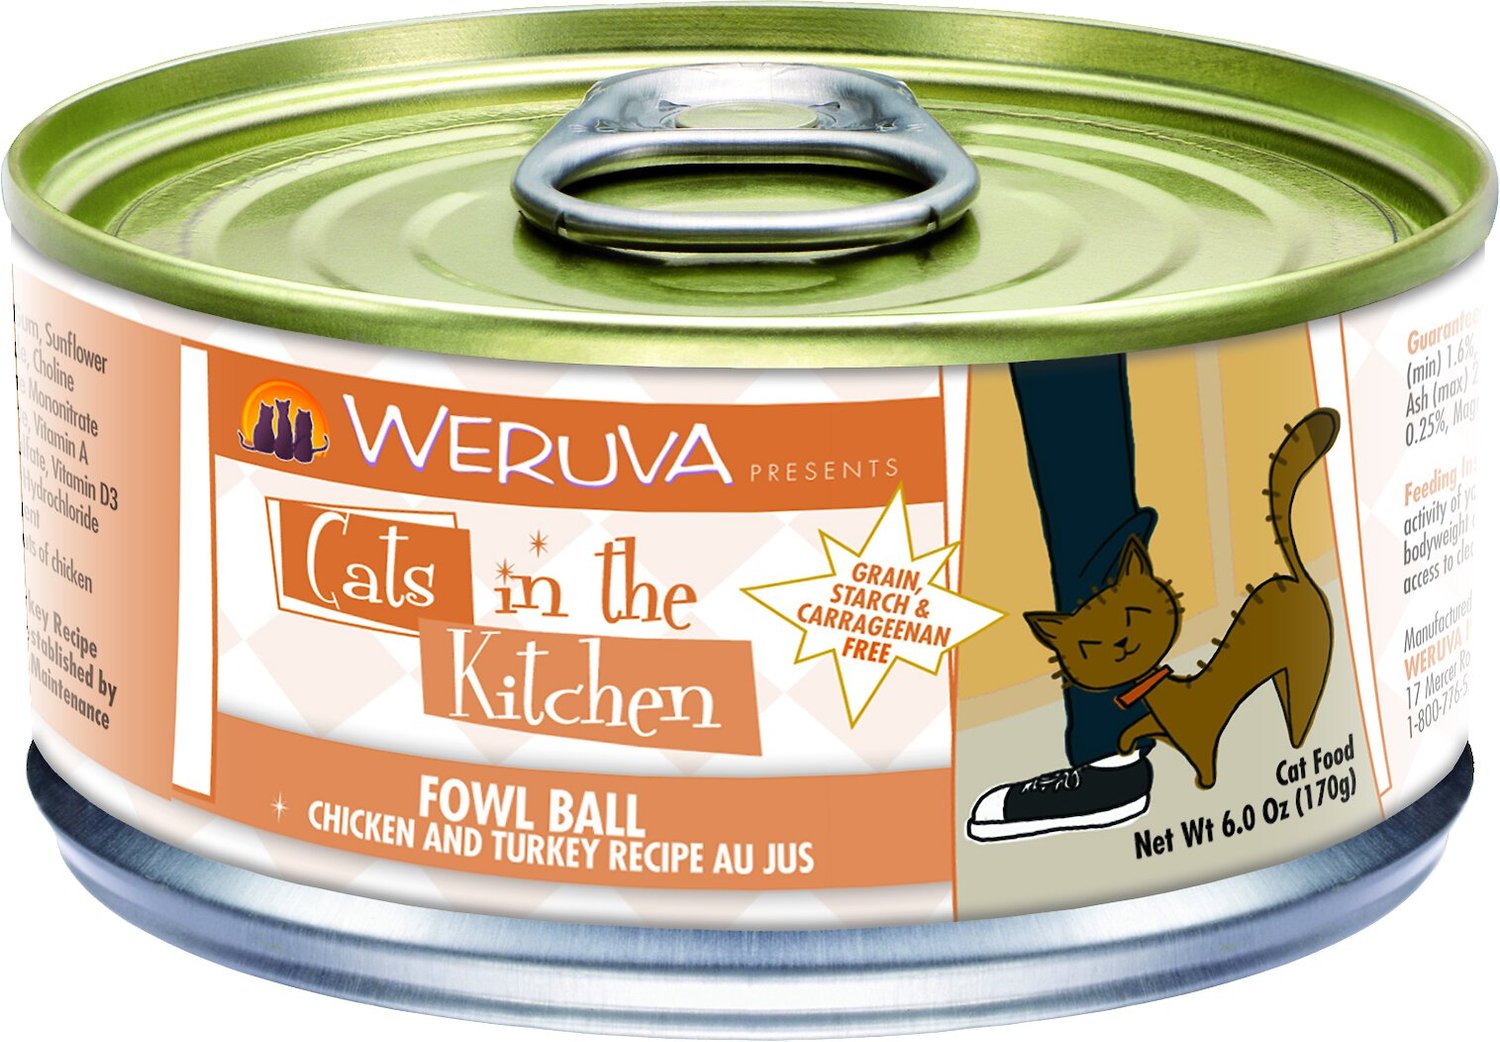 Weruva Cats in the Kitchen Fowl Ball Chicken & Turkey Recipe Au Jus